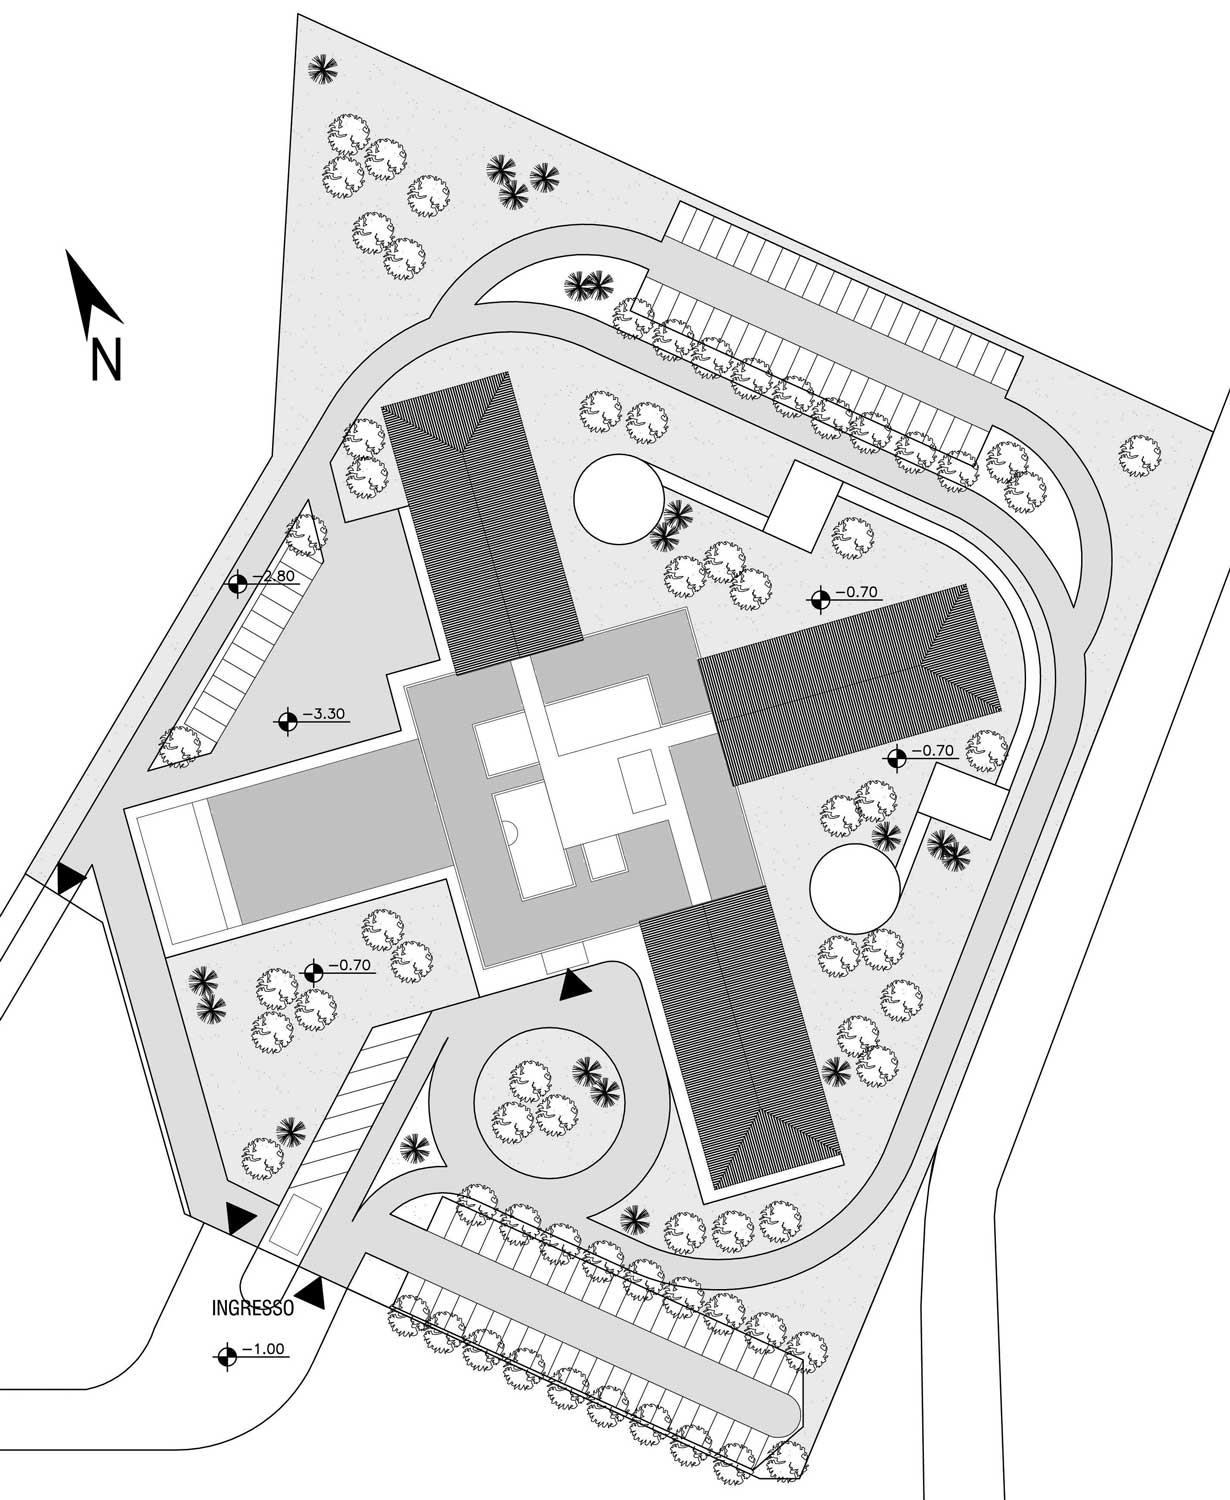 22 - Complesso plurifunzionale sull’area dell’ex Falegnameria EMU, Marsciano (PG); con P. Luccioni - Planimetria generale